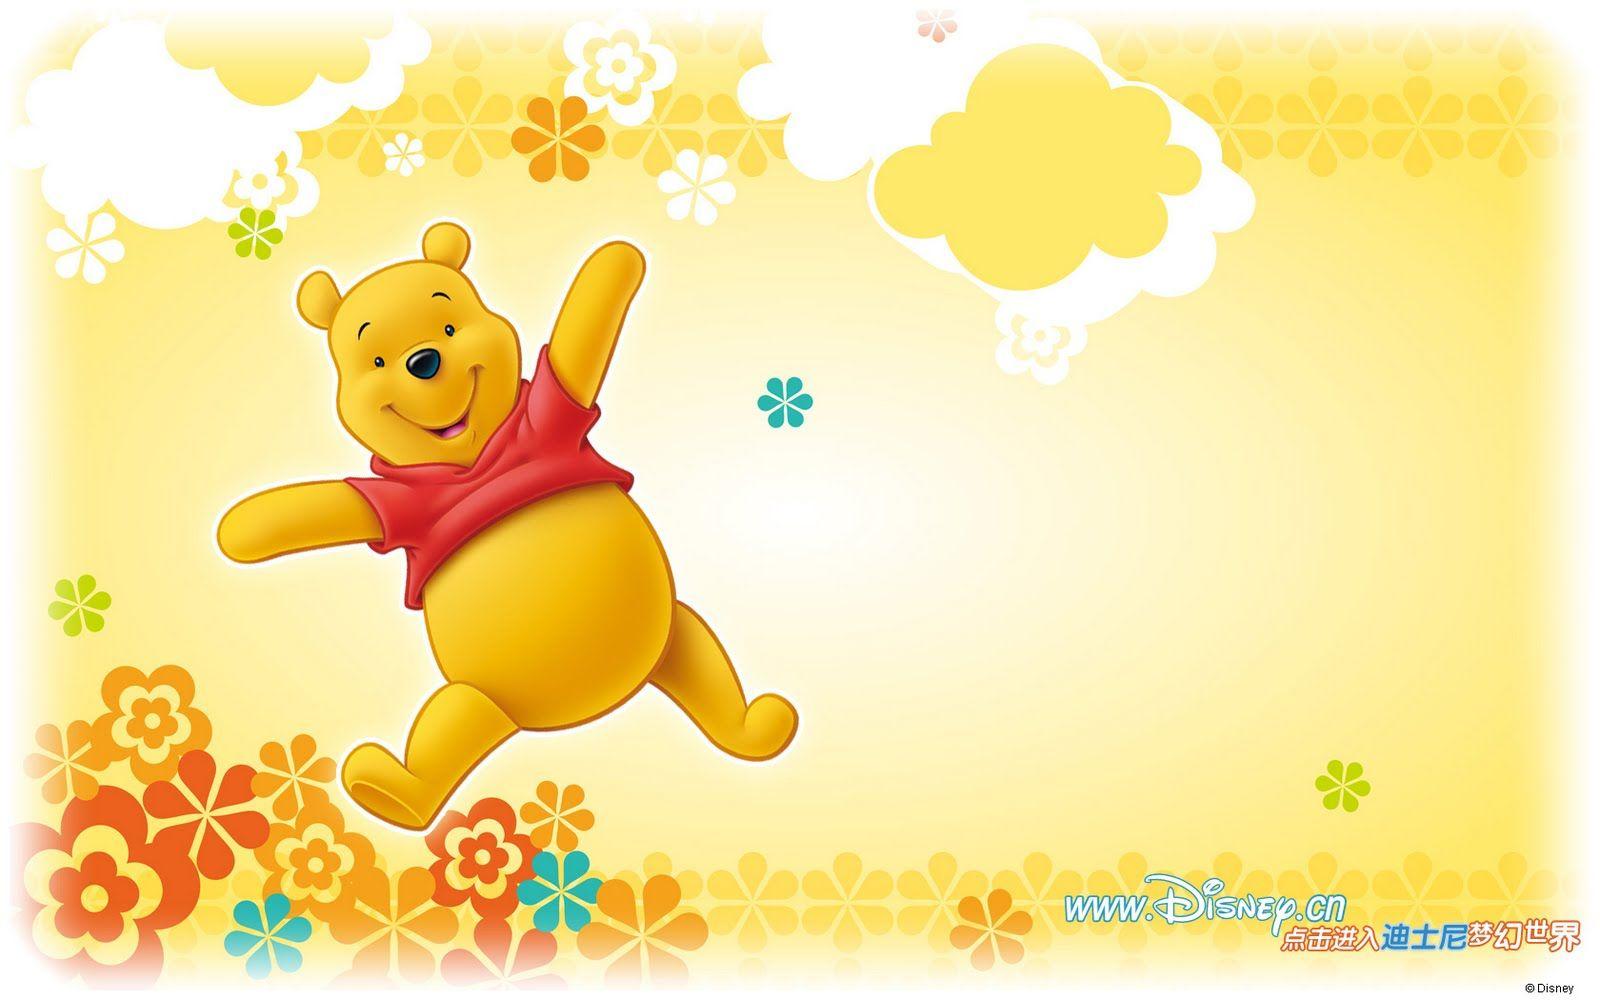 Widescreen Of Winnie The Pooh HD Desktop Wallpaper High Resolution